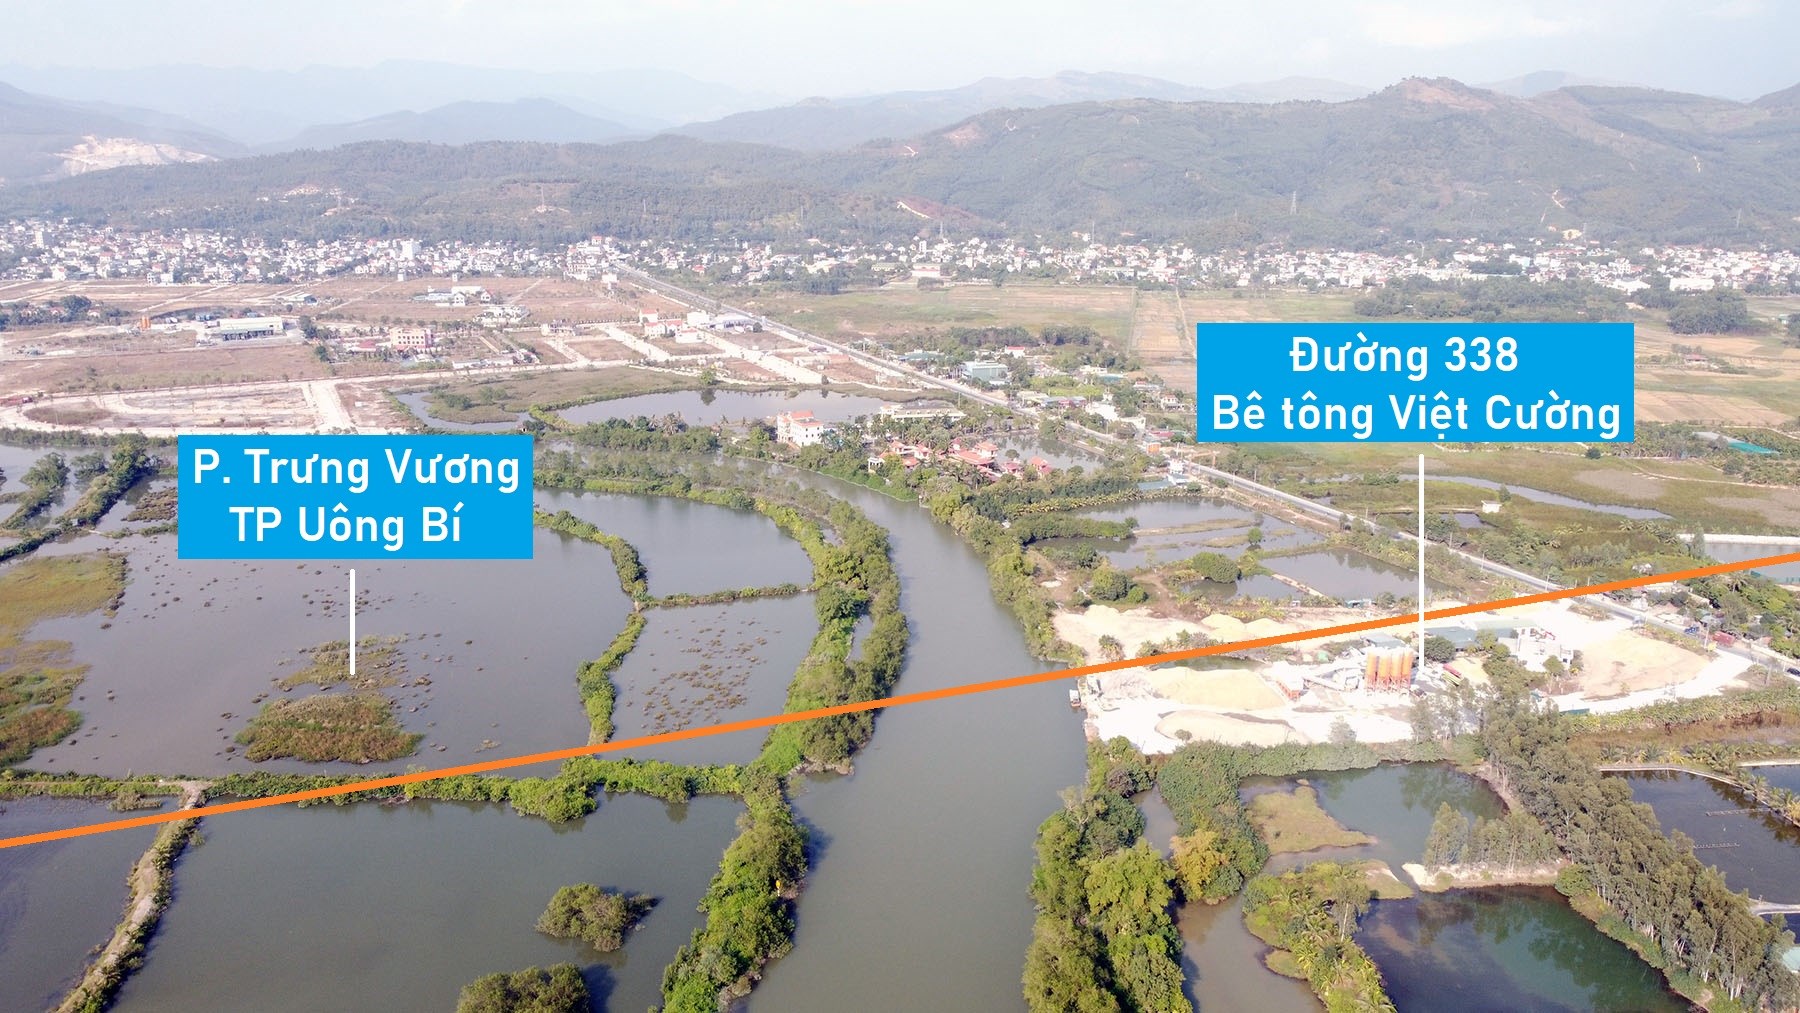 Toàn cảnh vị trí dự kiến quy hoạch cầu vượt sông Uông nối TP Uông Bí - TX Quảng Yên, Quảng Ninh